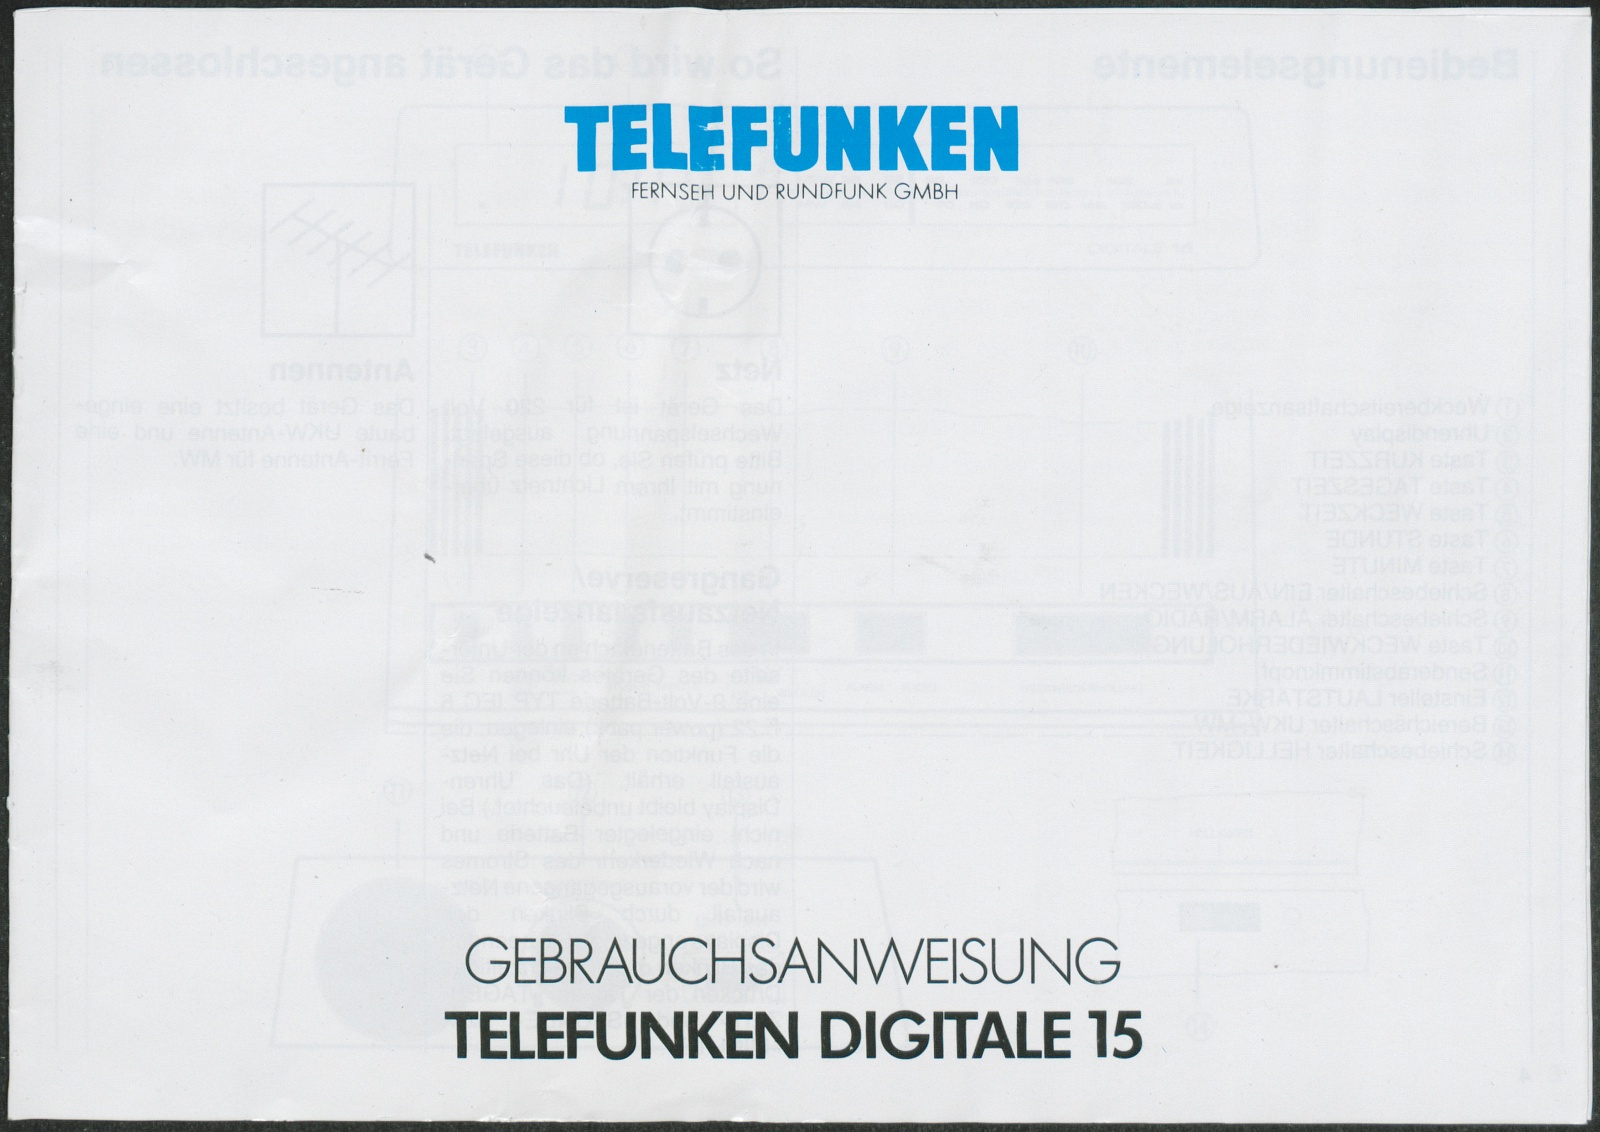 Bedienungsanleitung: Telefunken digitale 15 (Stiftung Deutsches Technikmuseum Berlin CC0)